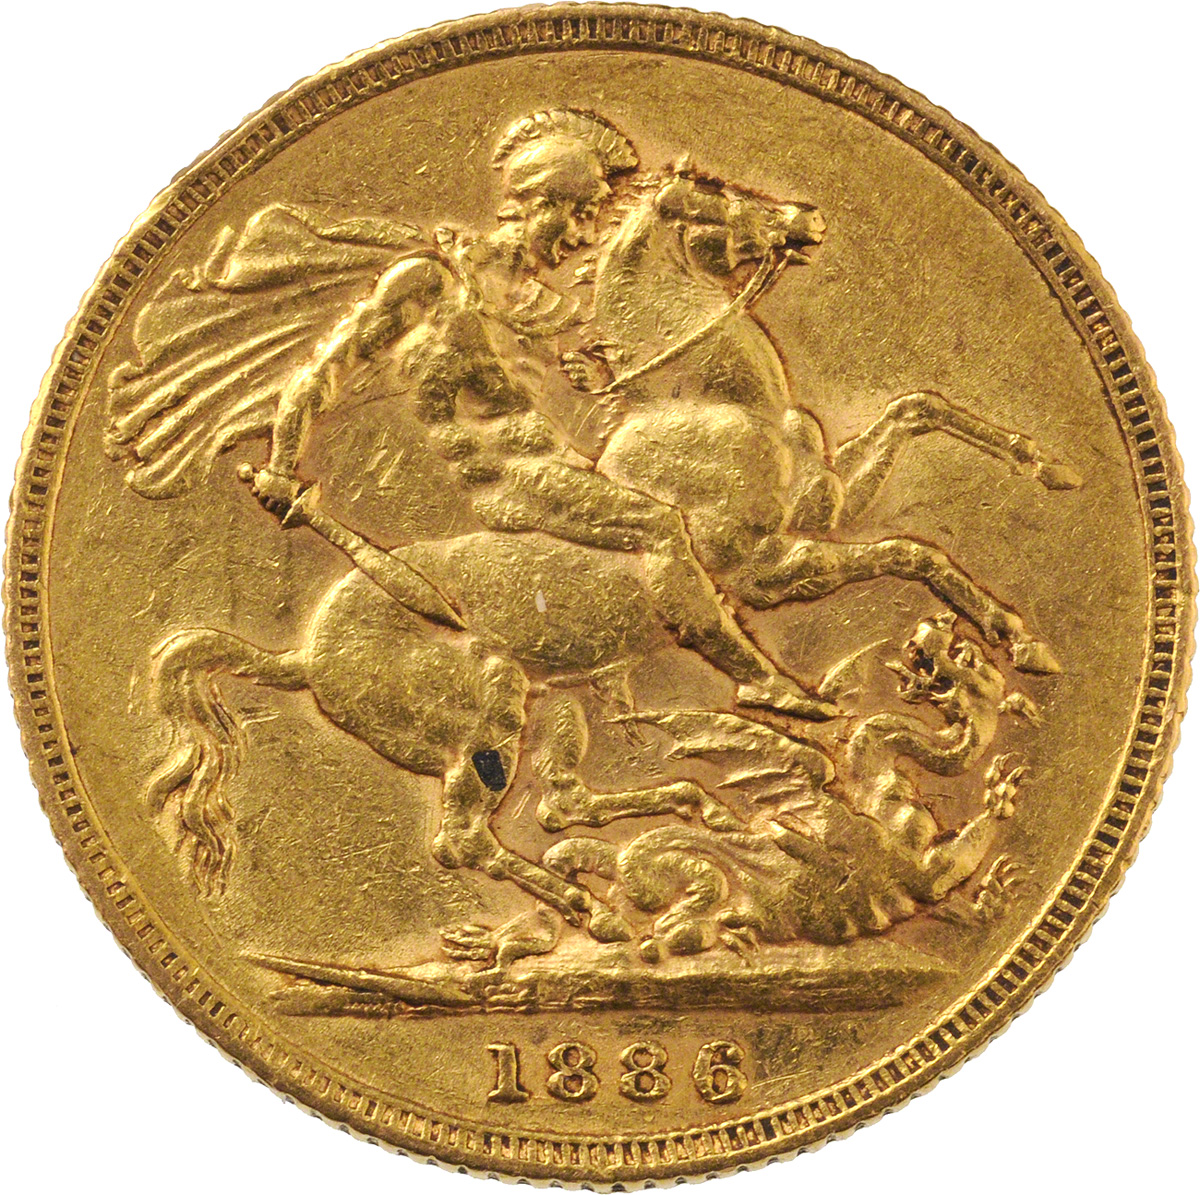 1886 Βικτώρια (Νομισματοκοπείο Σίδνεϊ)